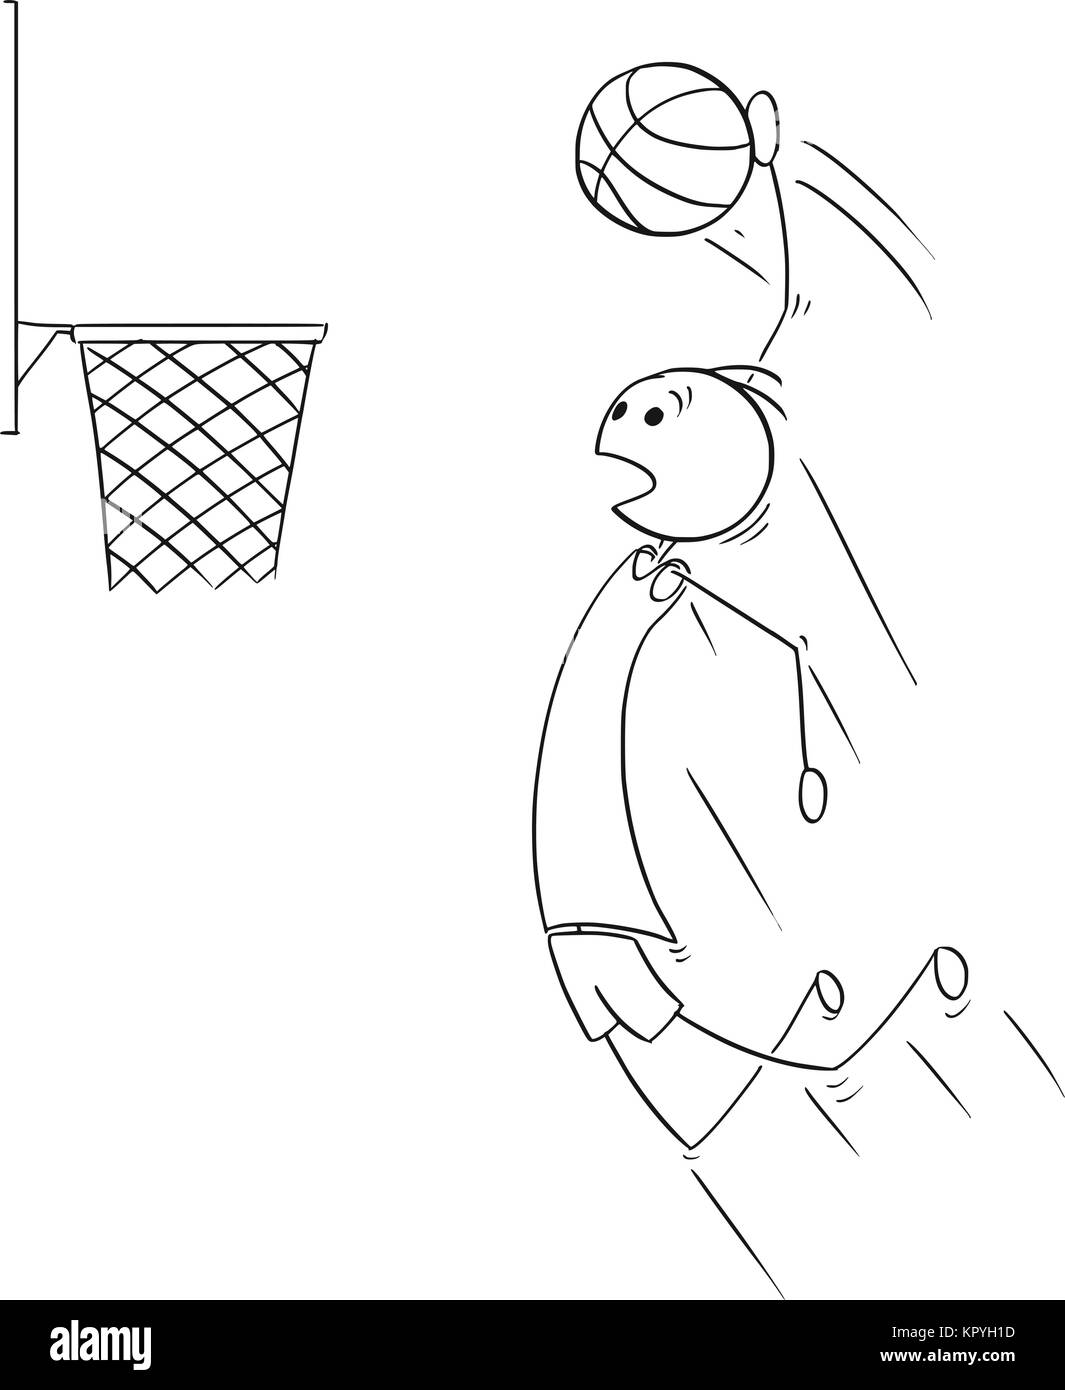 Cartoon stick Mann Zeichnung Abbildung: Basketball Spieler springen und Scoring Ziel. Stock Vektor